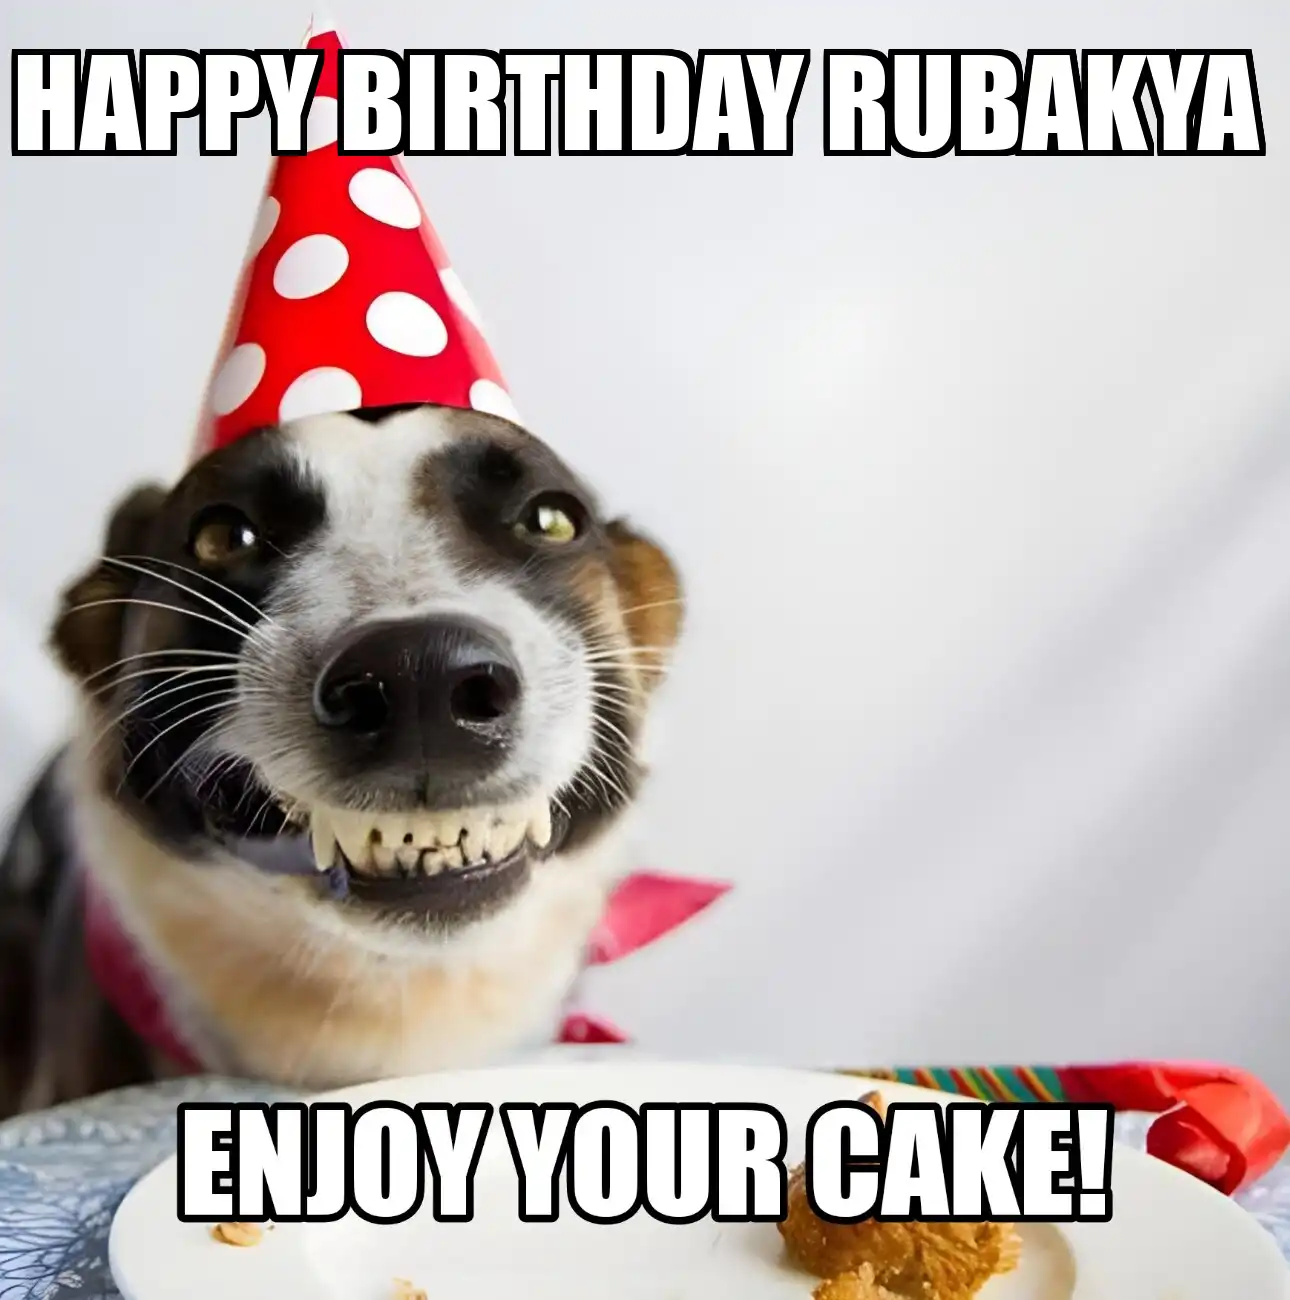 Happy Birthday Rubakya Enjoy Your Cake Dog Meme